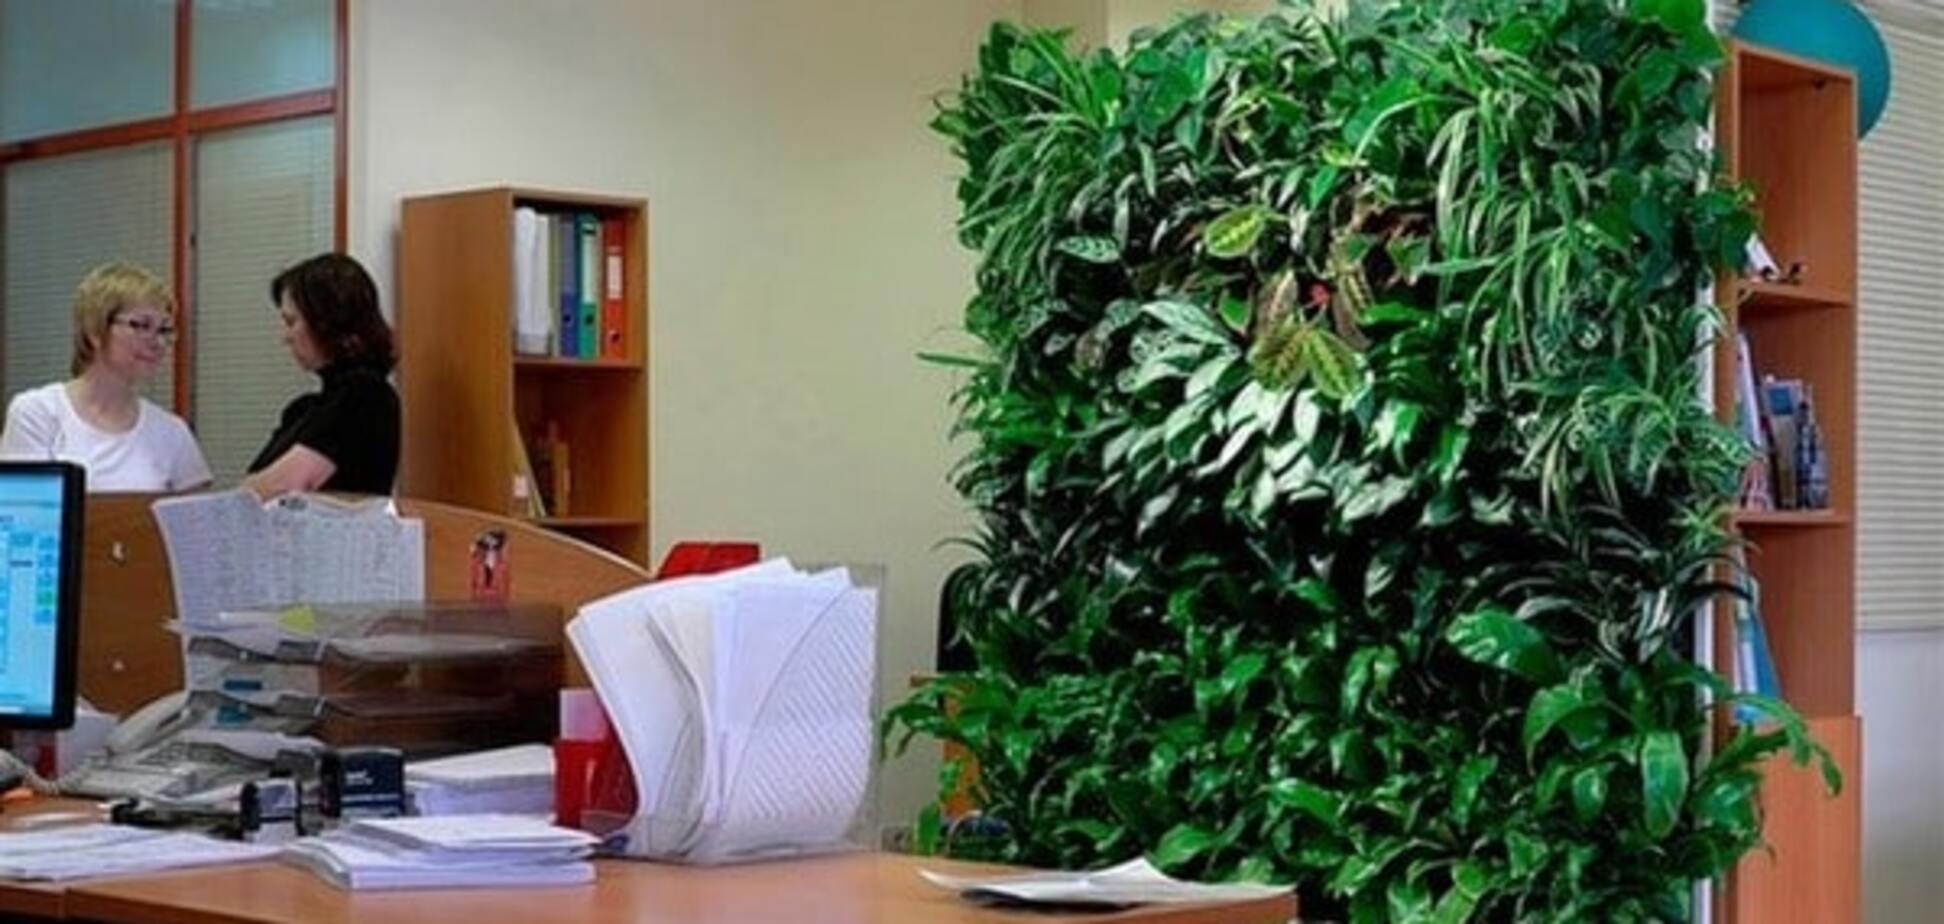 Растения в офисах повышают производительность труда